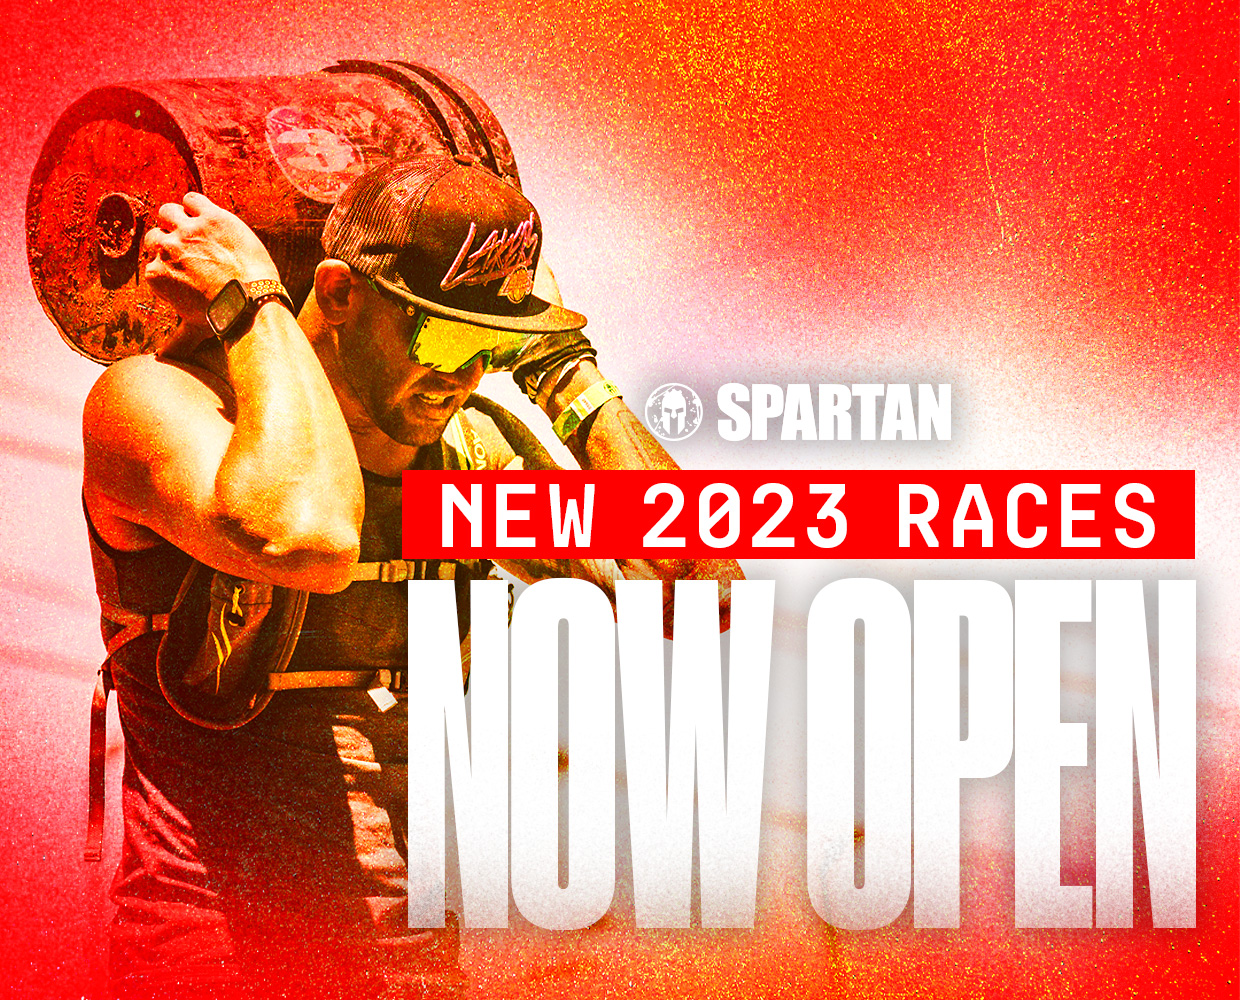 Don’t sleep on 2023 Spartan Race